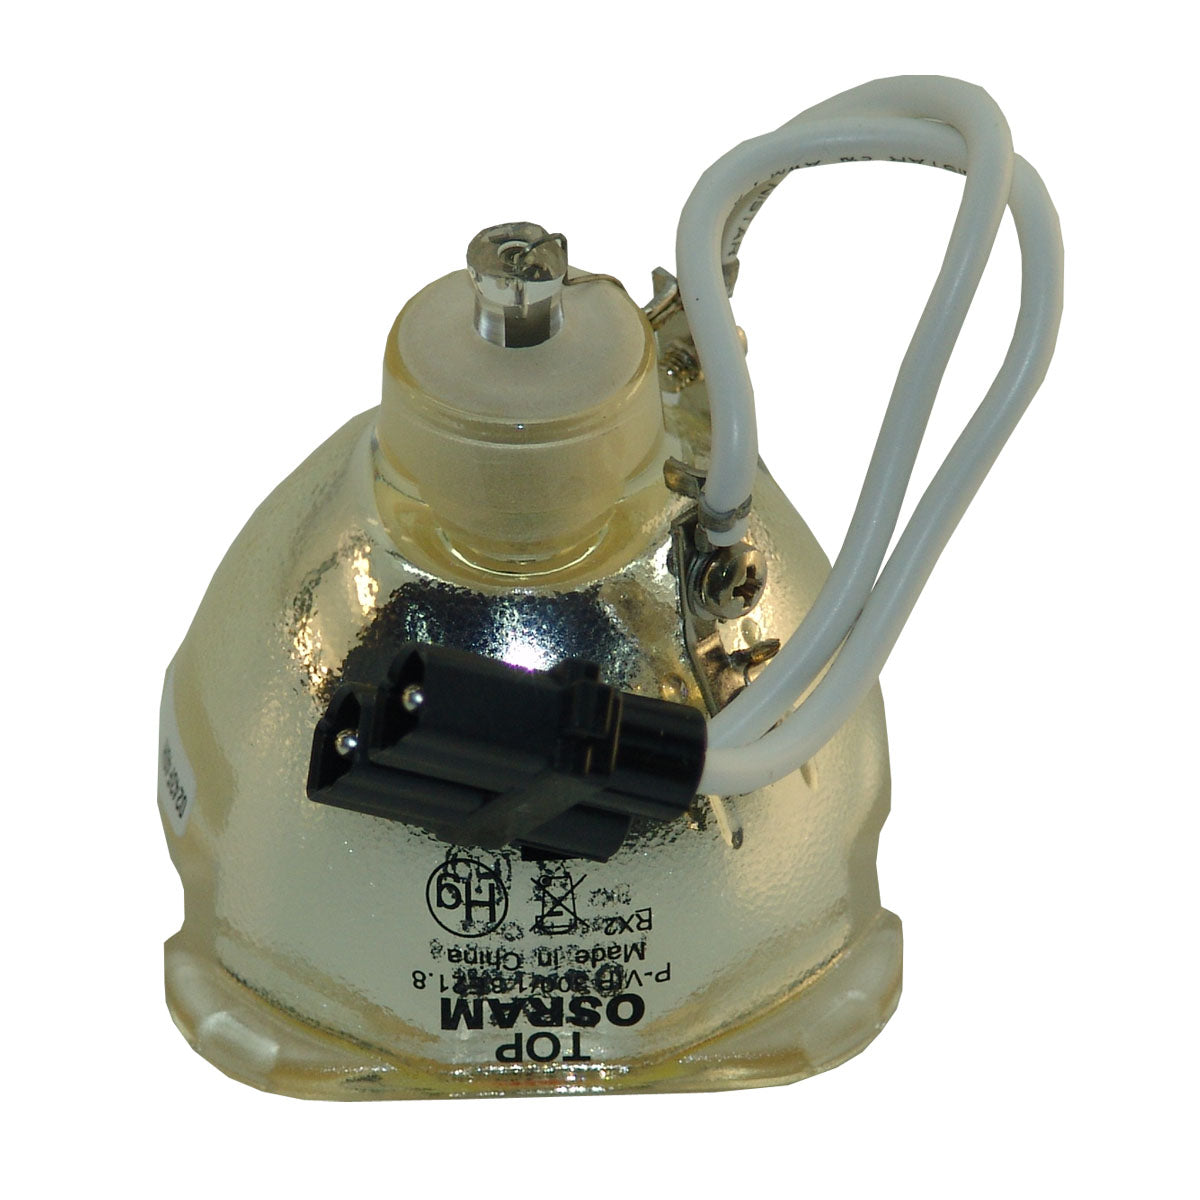 Dell 317-1135 Osram Projector Bare Lamp